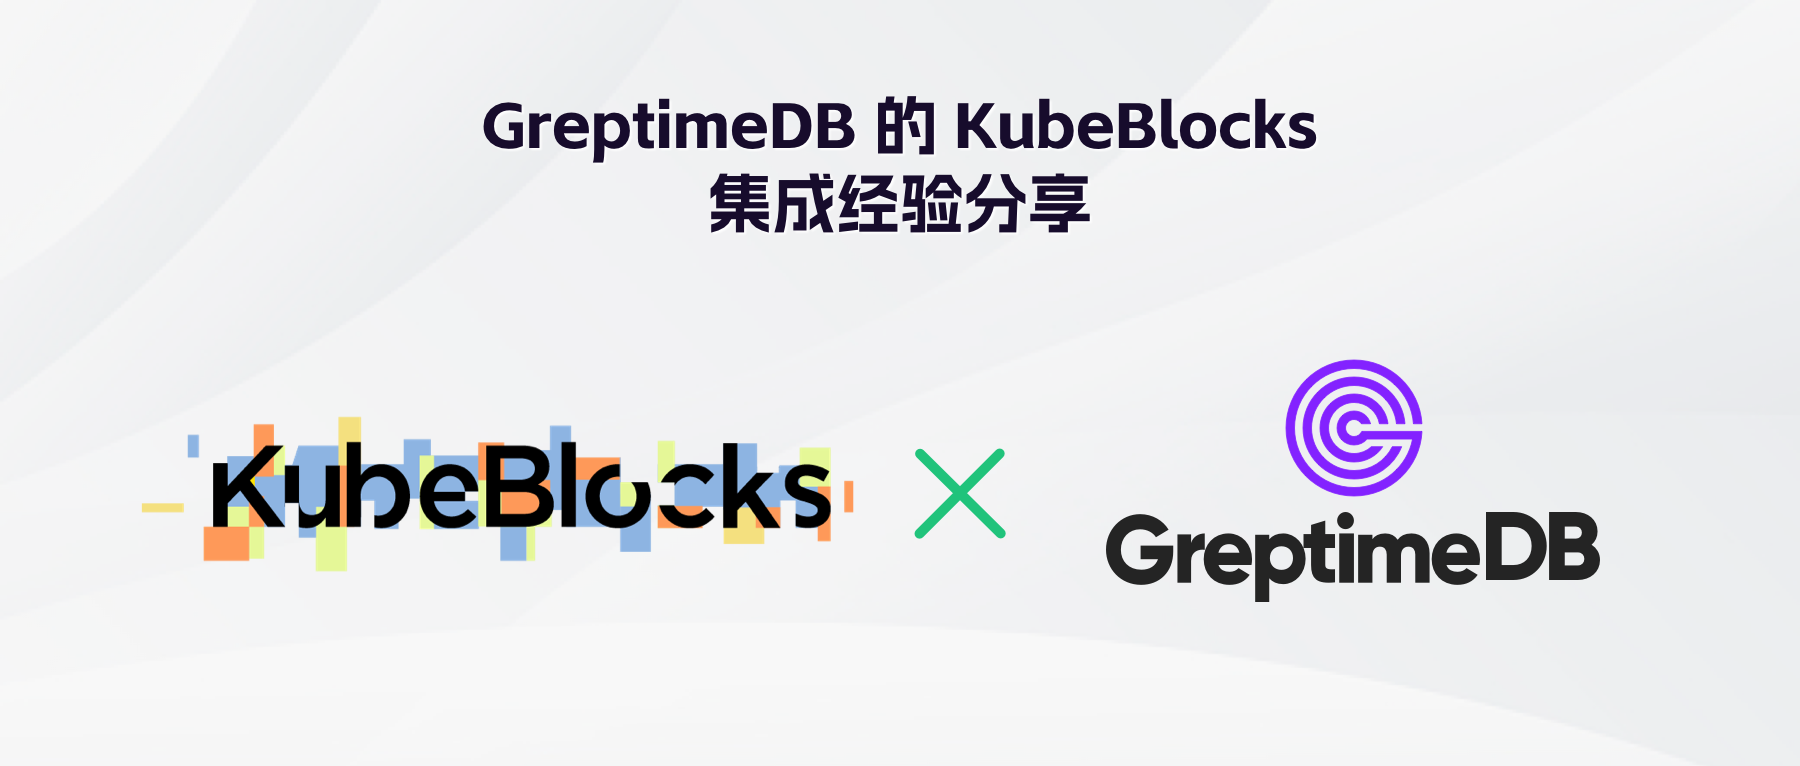 GreptimeDB 的 KubeBlocks 集成经验分享